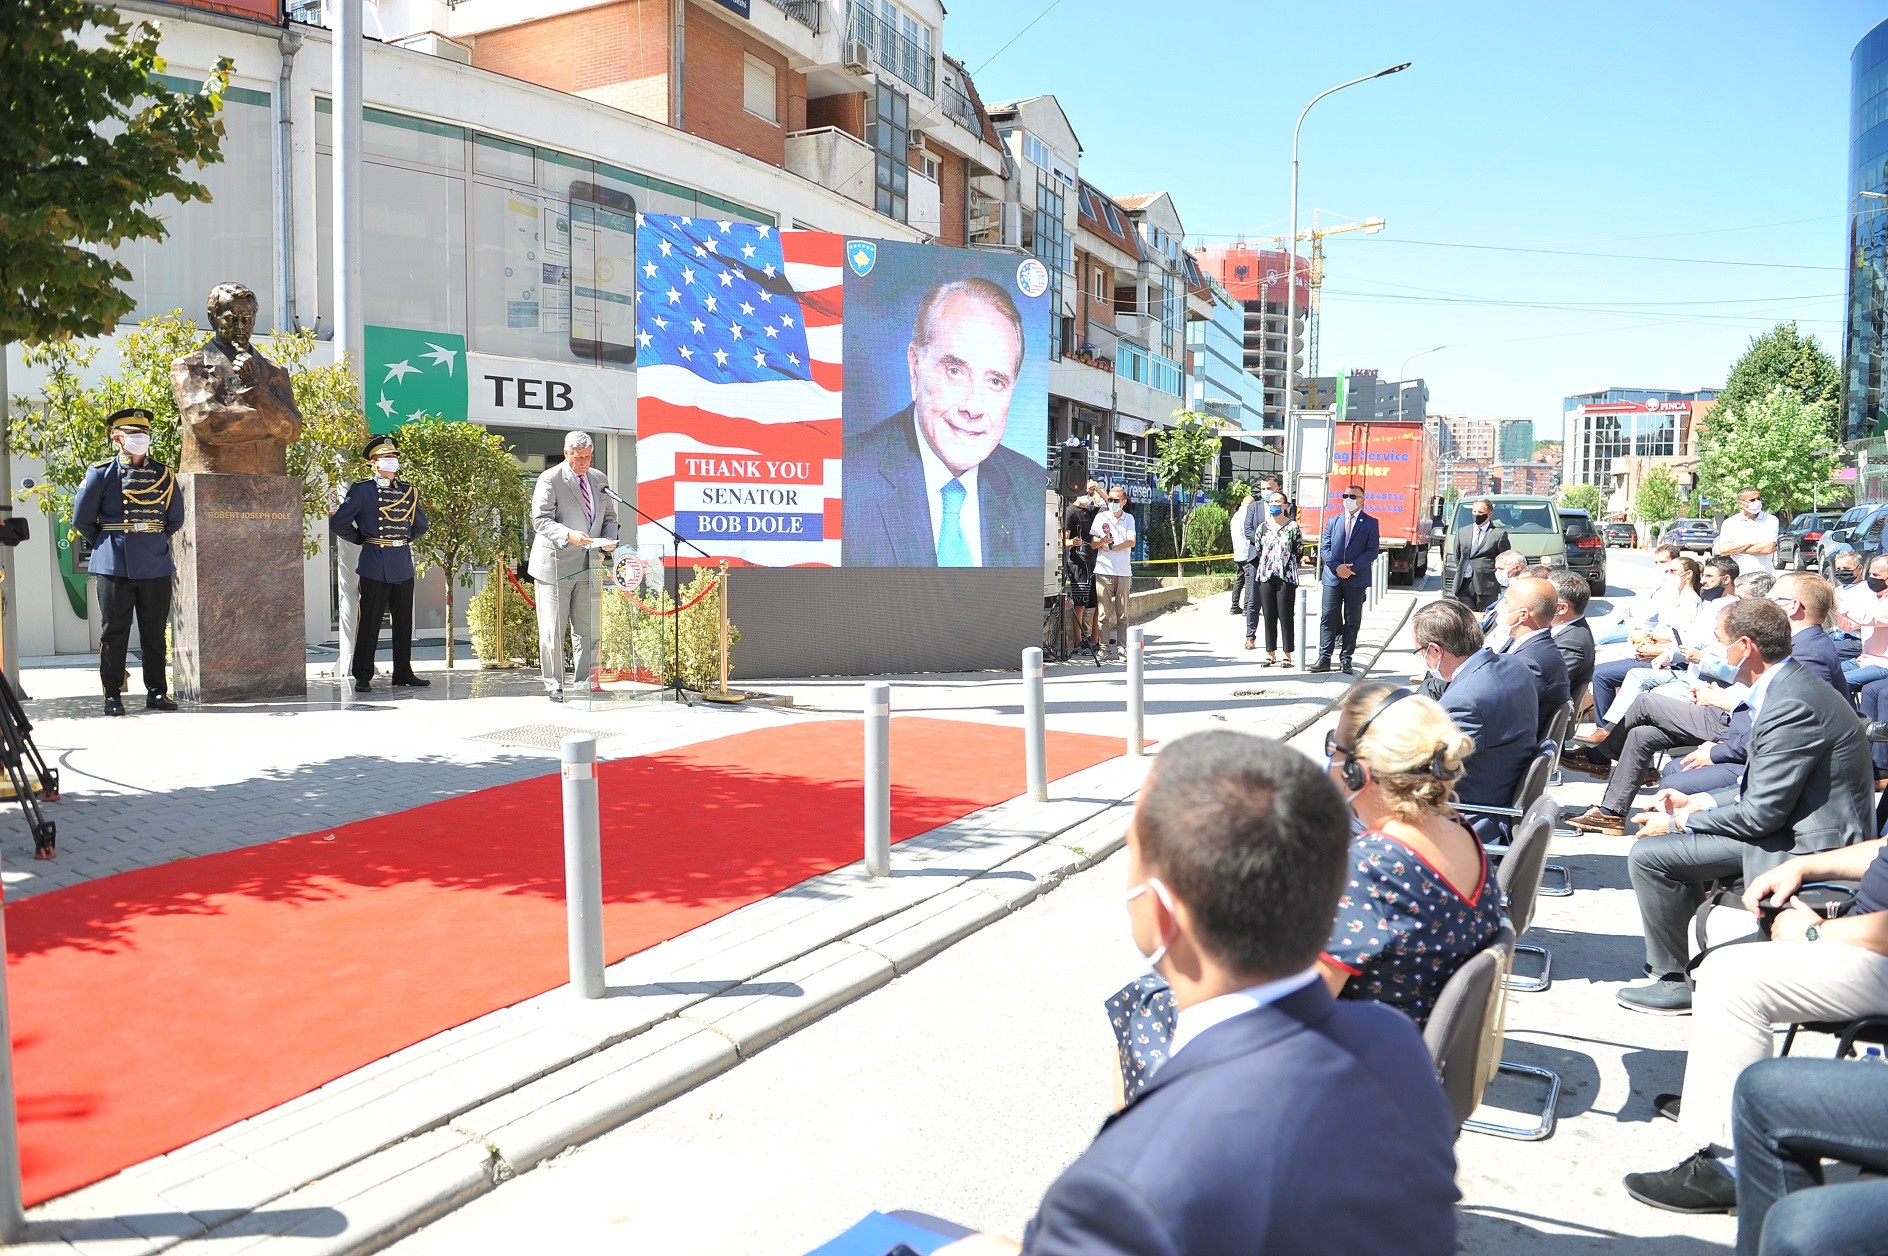 Oda Amerikane dhe Qeveria e Kosovës inaugurojnë bustin e Senatorit Bob Dole